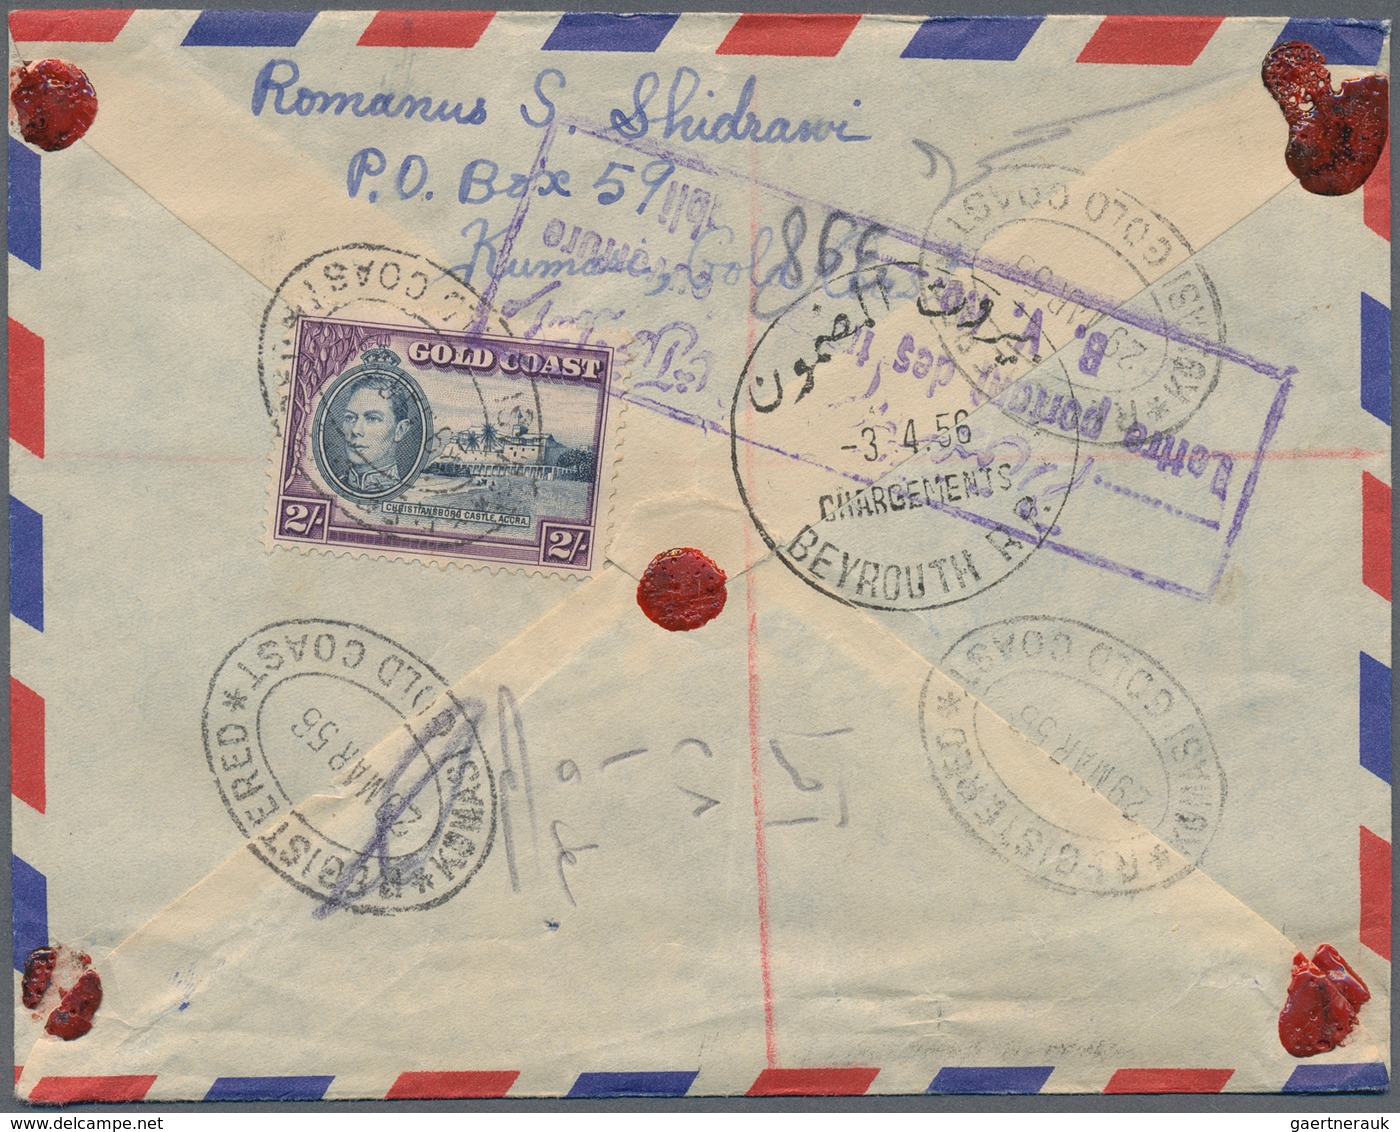 Goldküste: 1894/1952: 36 interesting envelopes, picture postcards and postal stationeries including